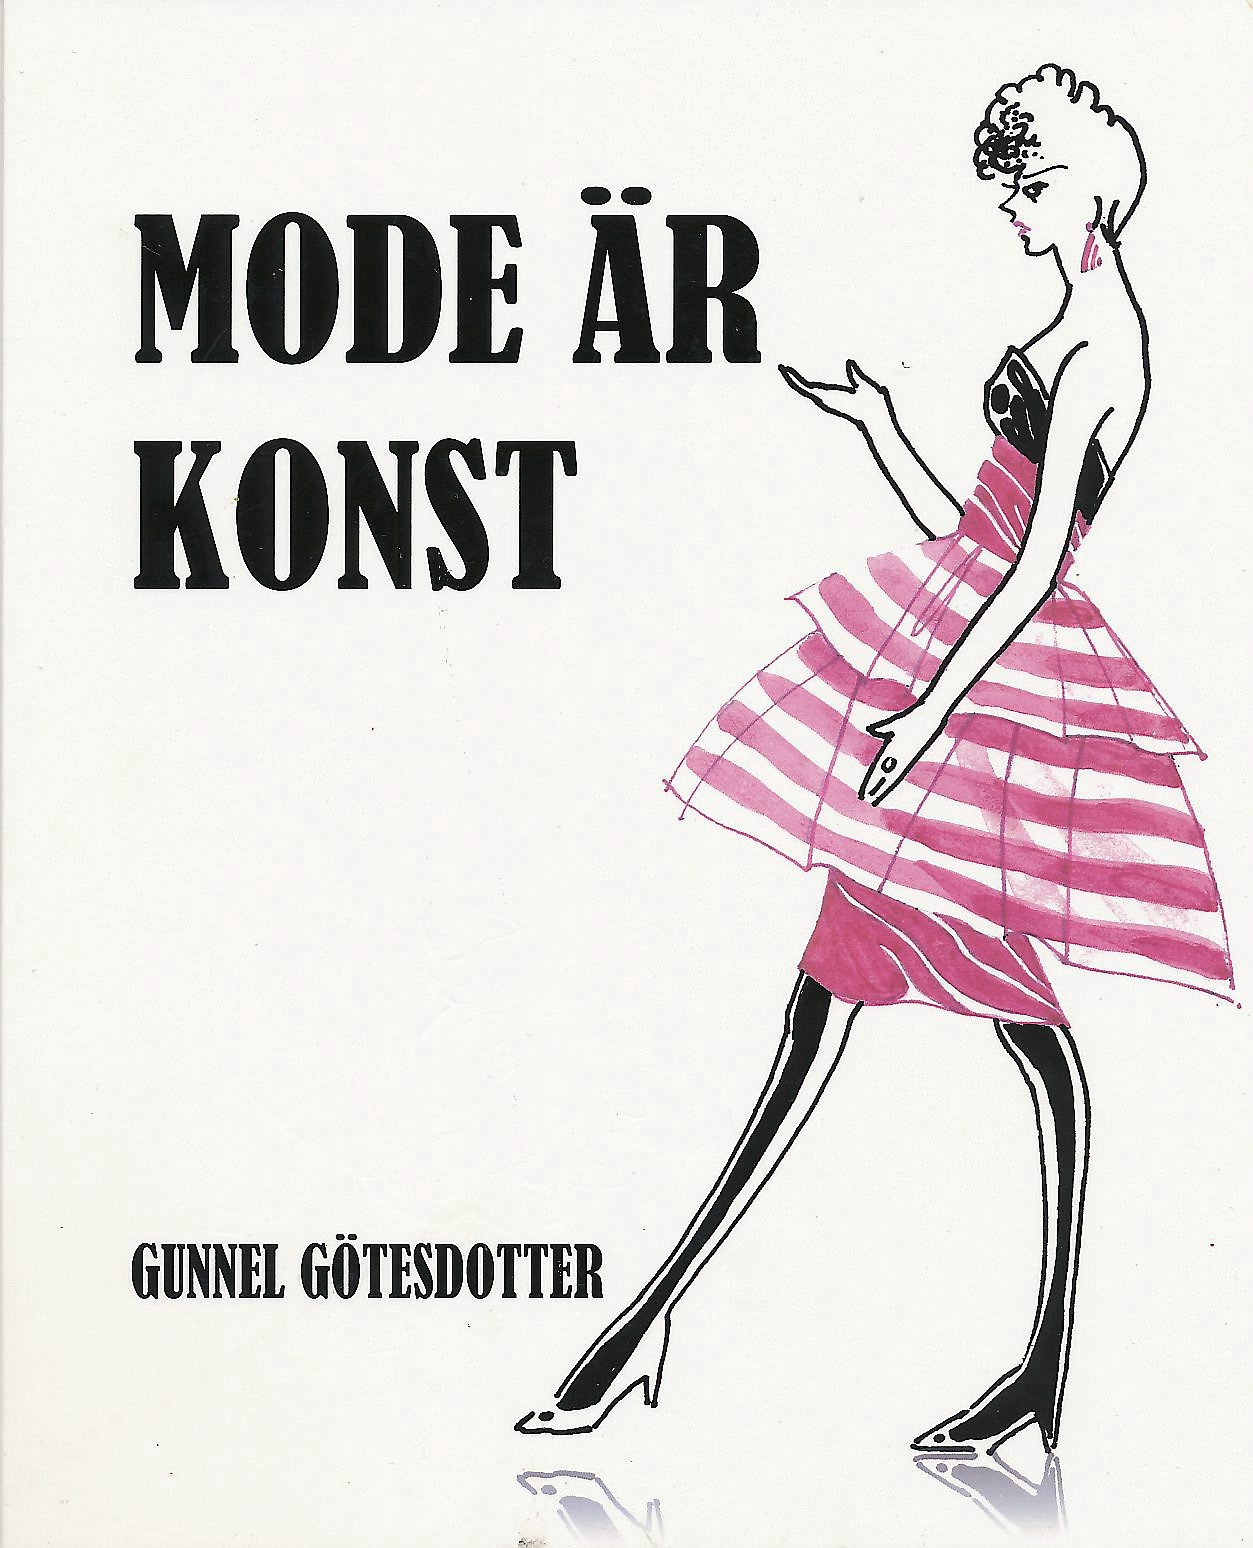 Mode är konst, av Gunnel Götesdotter.